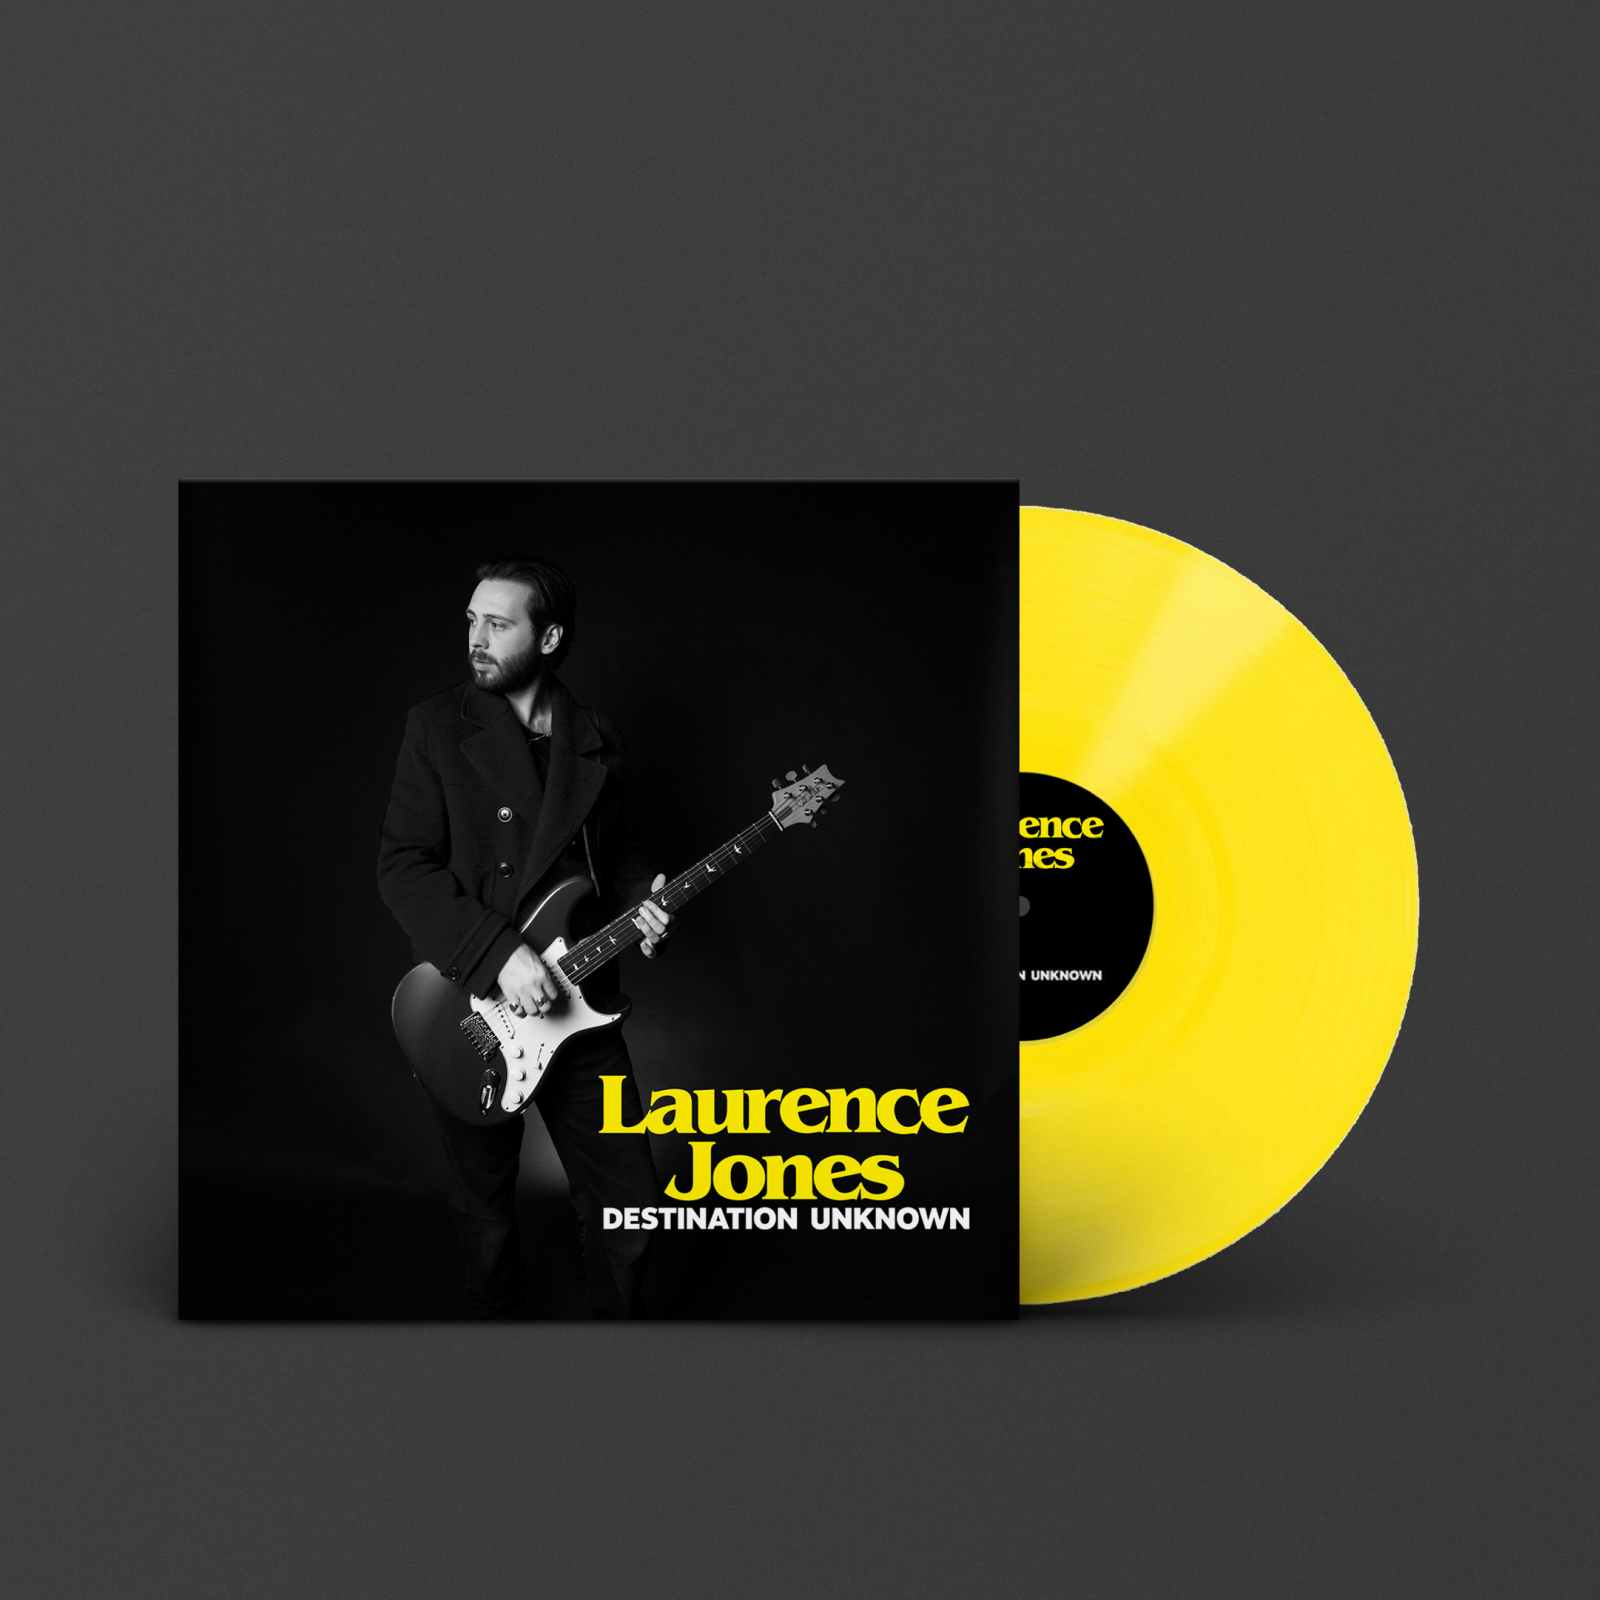 Laurence Jonesの『DESTINATION UNKNOWN』。Marshallからリリースされた新作アルバムは、限定盤のイエロー仕様のLPレコード。ブルースっ気のあるソウルフルなサウンドがフィーチャーされている。